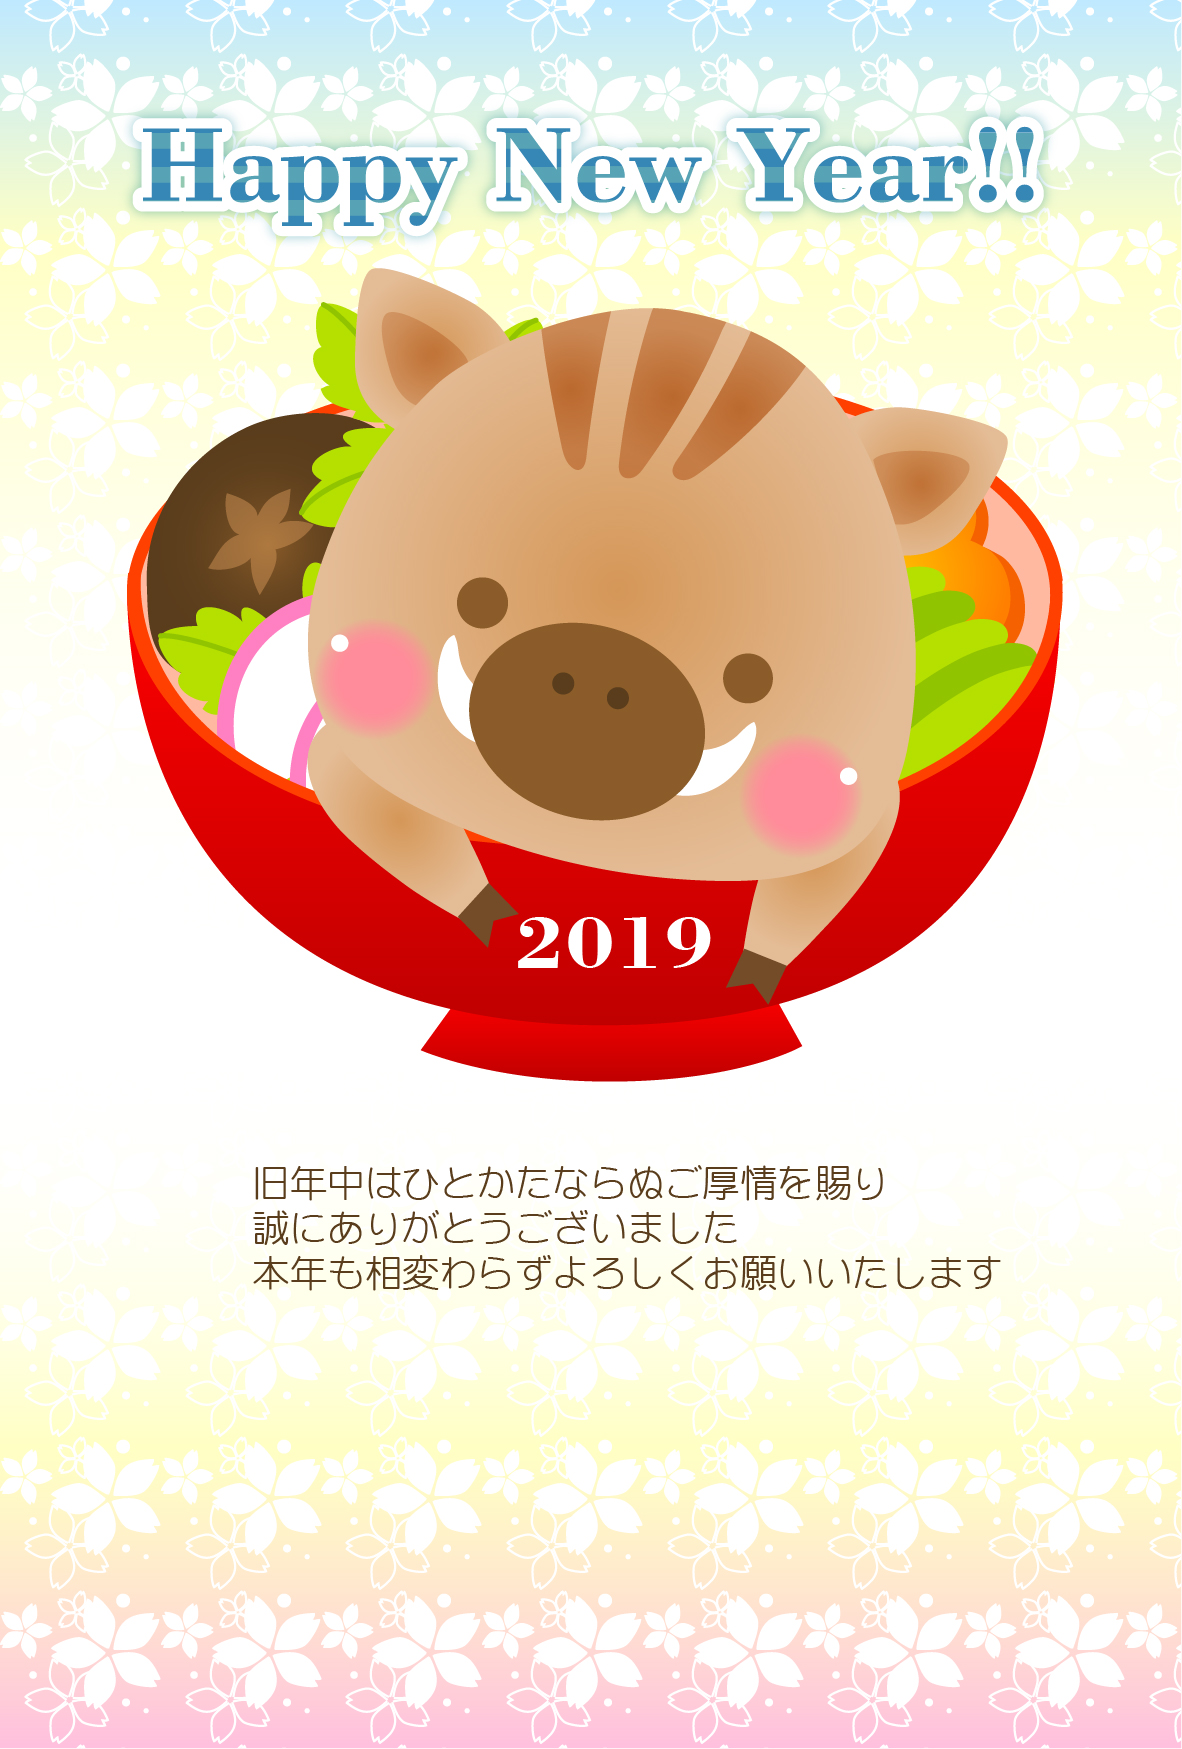 亥 猪 とお雑煮の年賀状テンプレート素材 年賀状桜屋